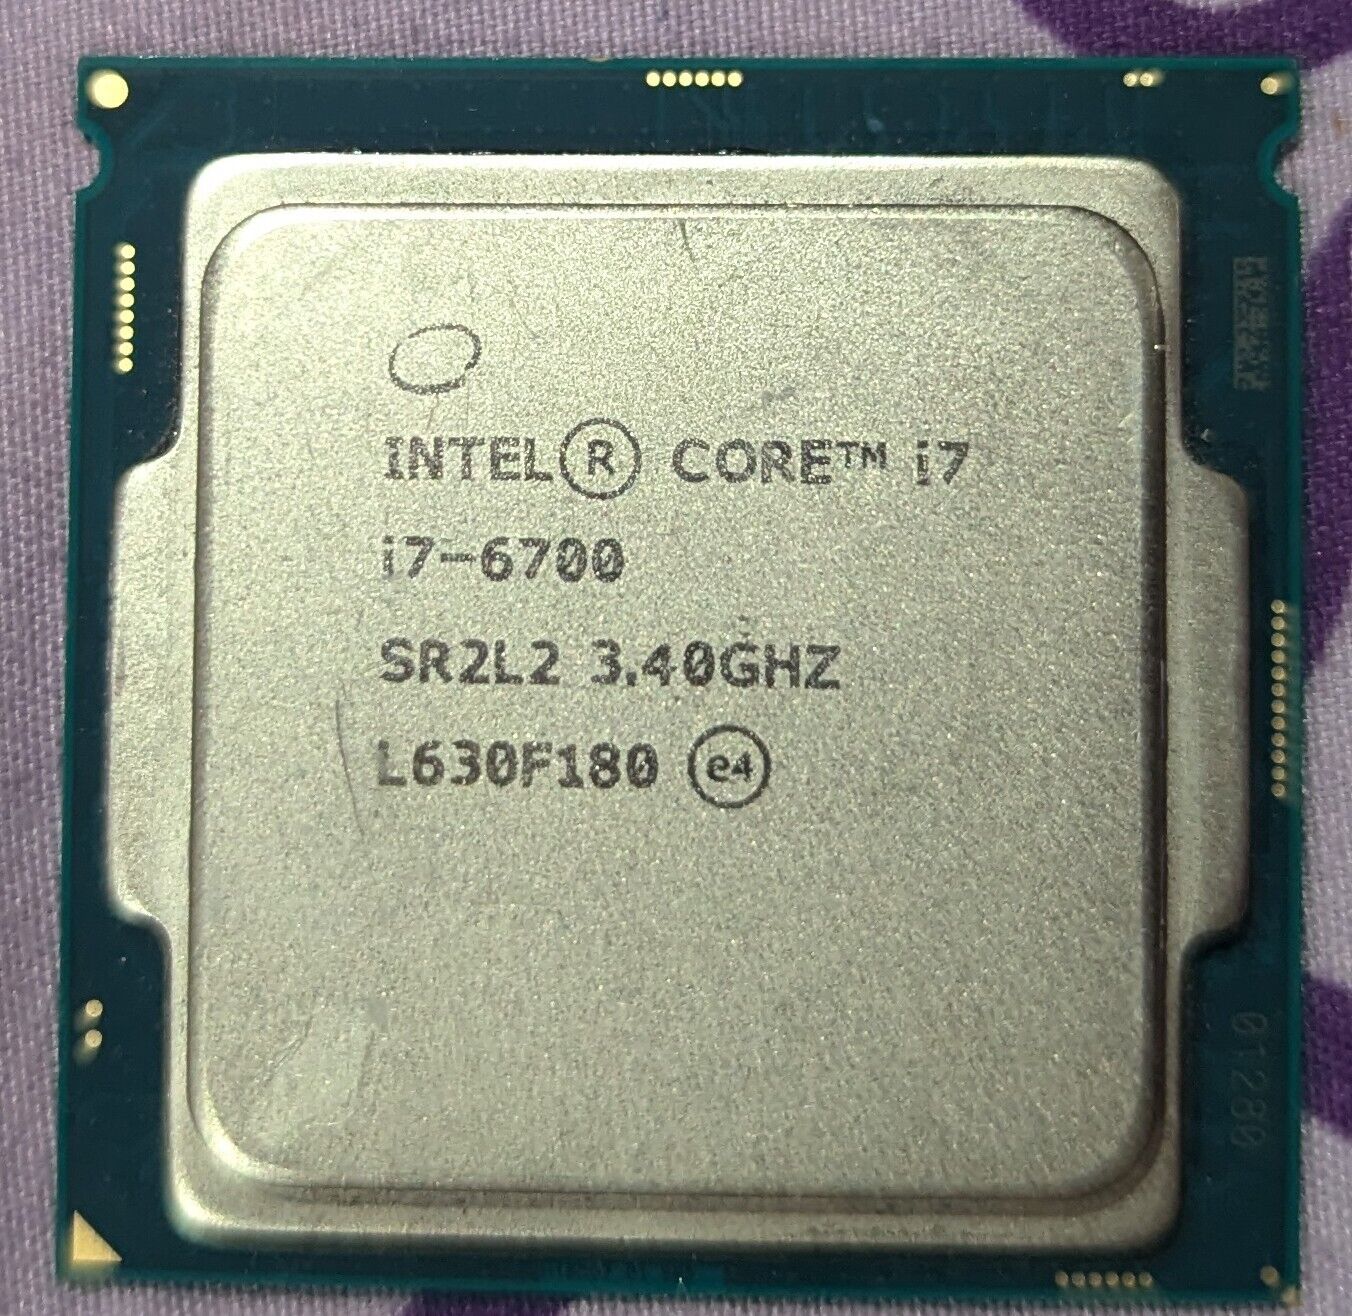 Intel Core i7-6700 Processor (3.40 GHz, 4 Cores, LGA 1151) - SR2L2